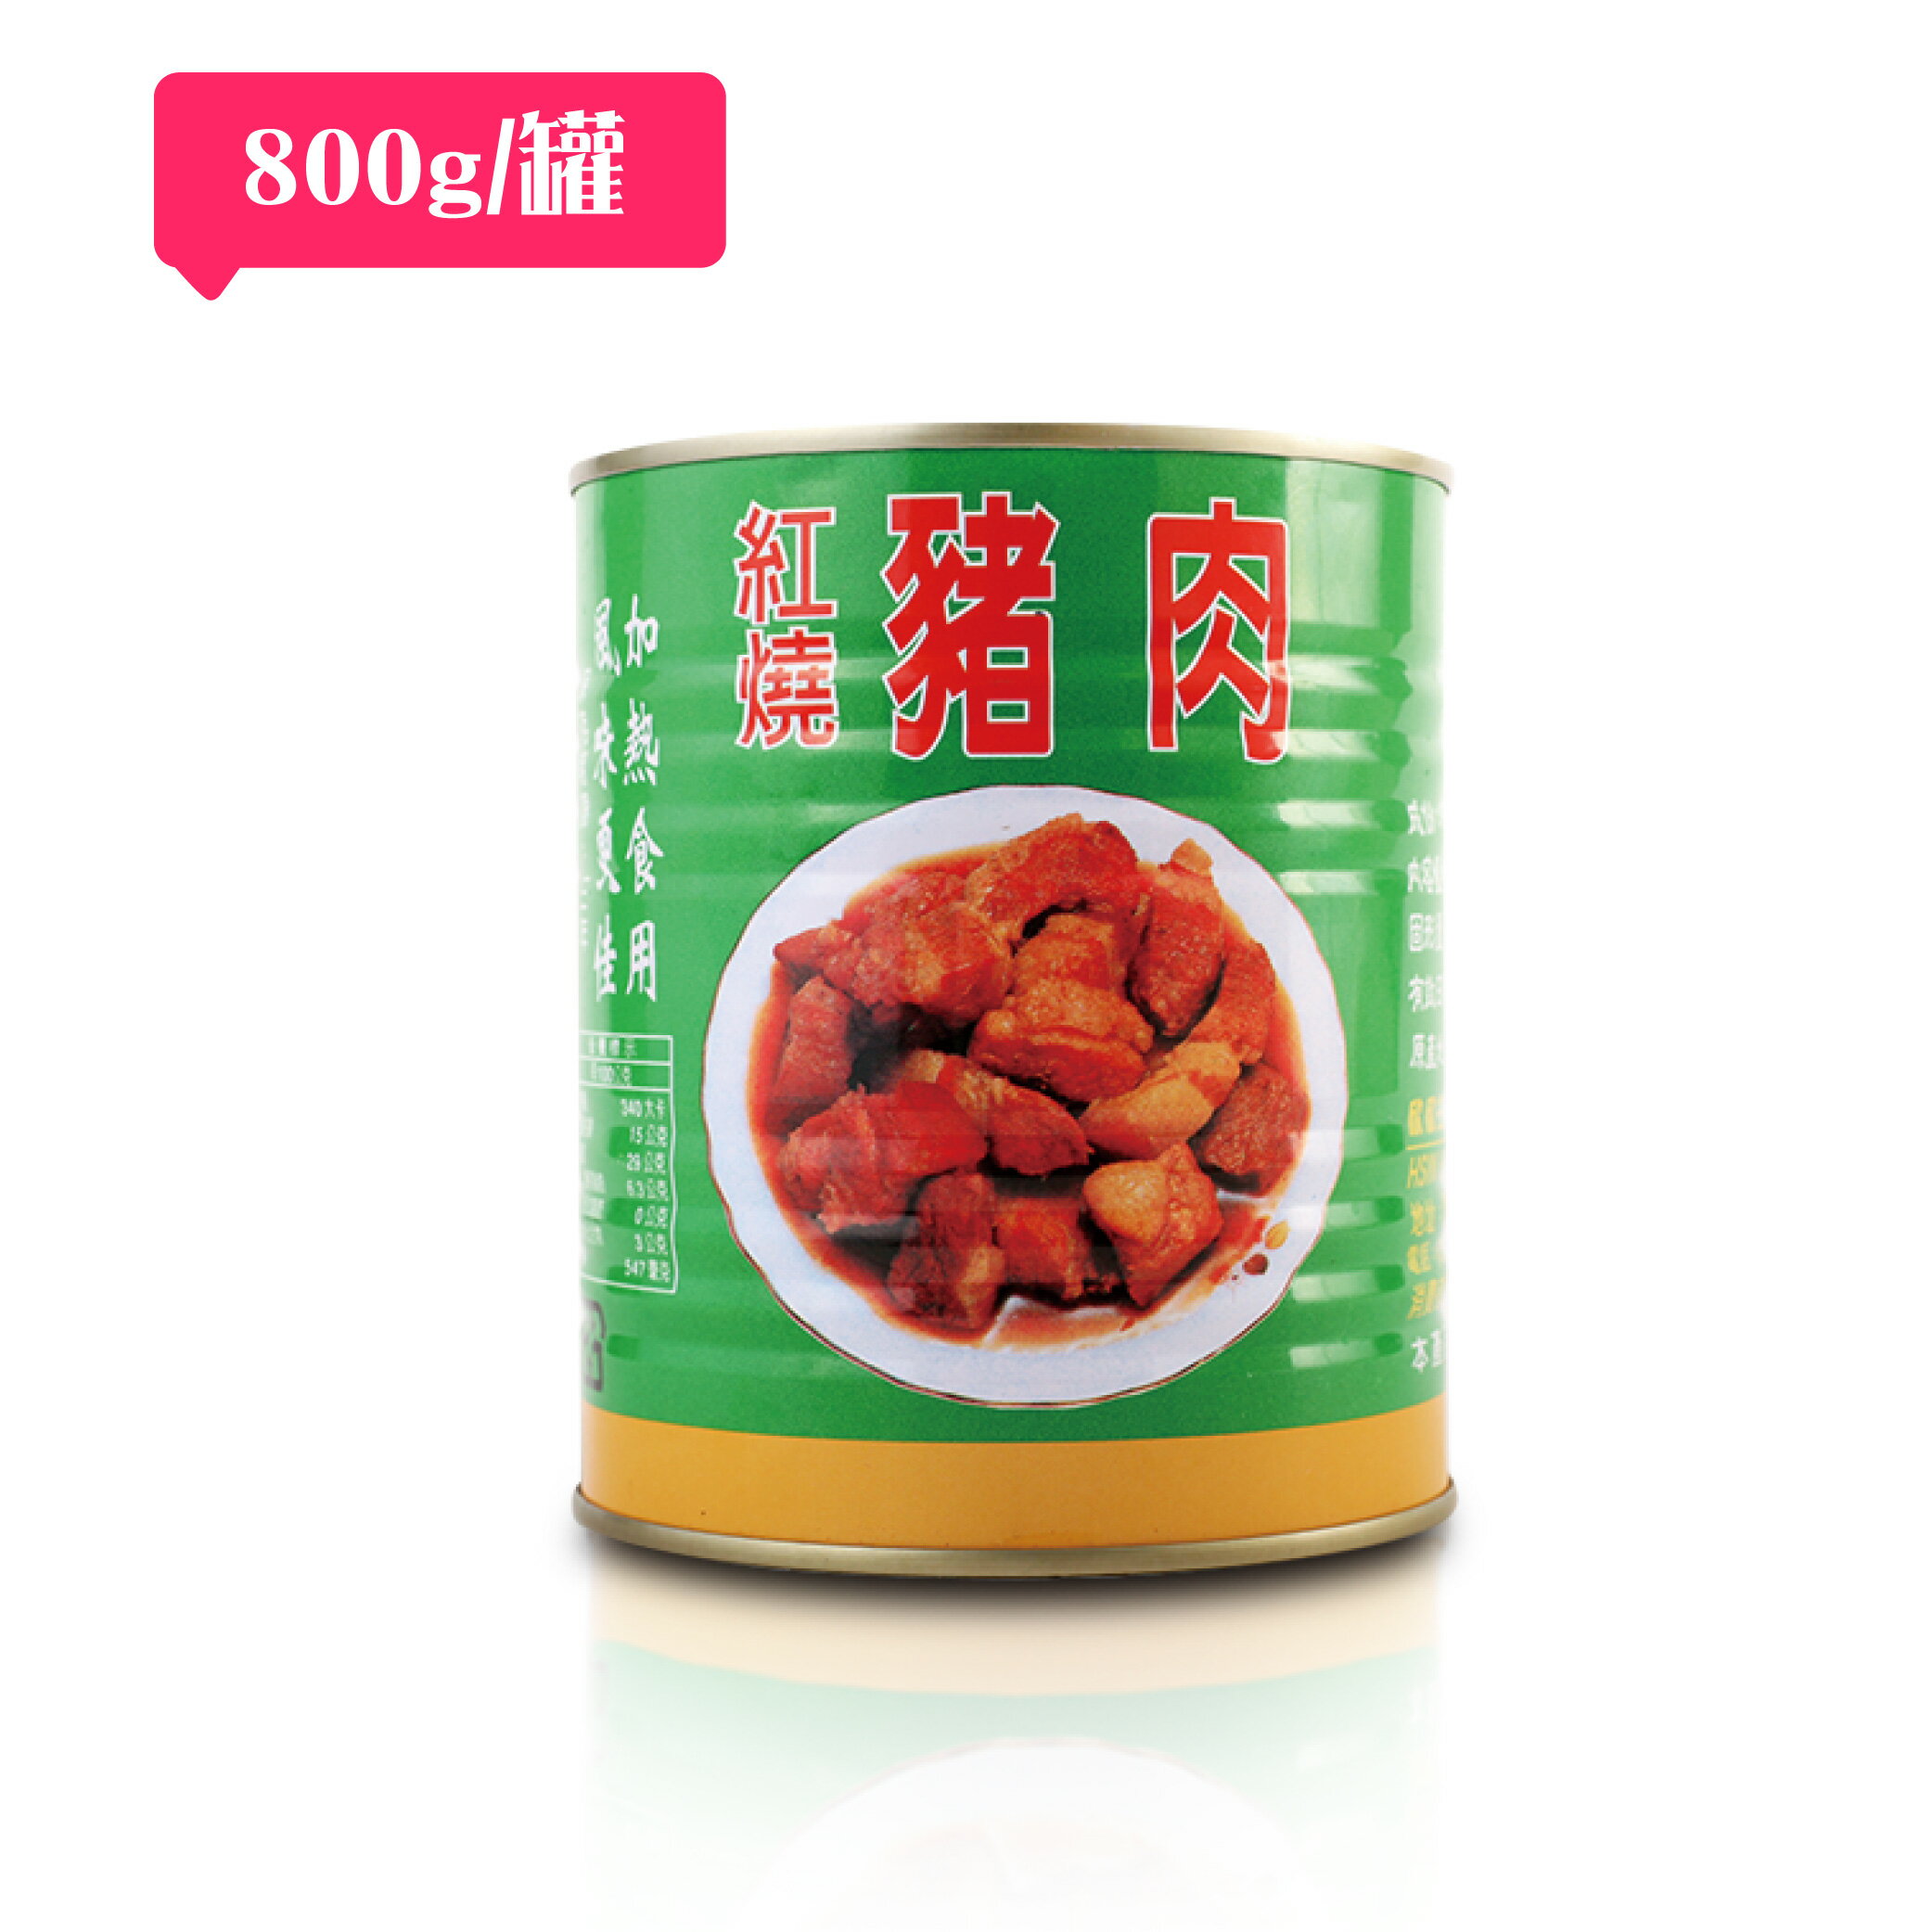 紅燒豬肉罐頭(800g)/豬肉來源國：臺灣、加拿大